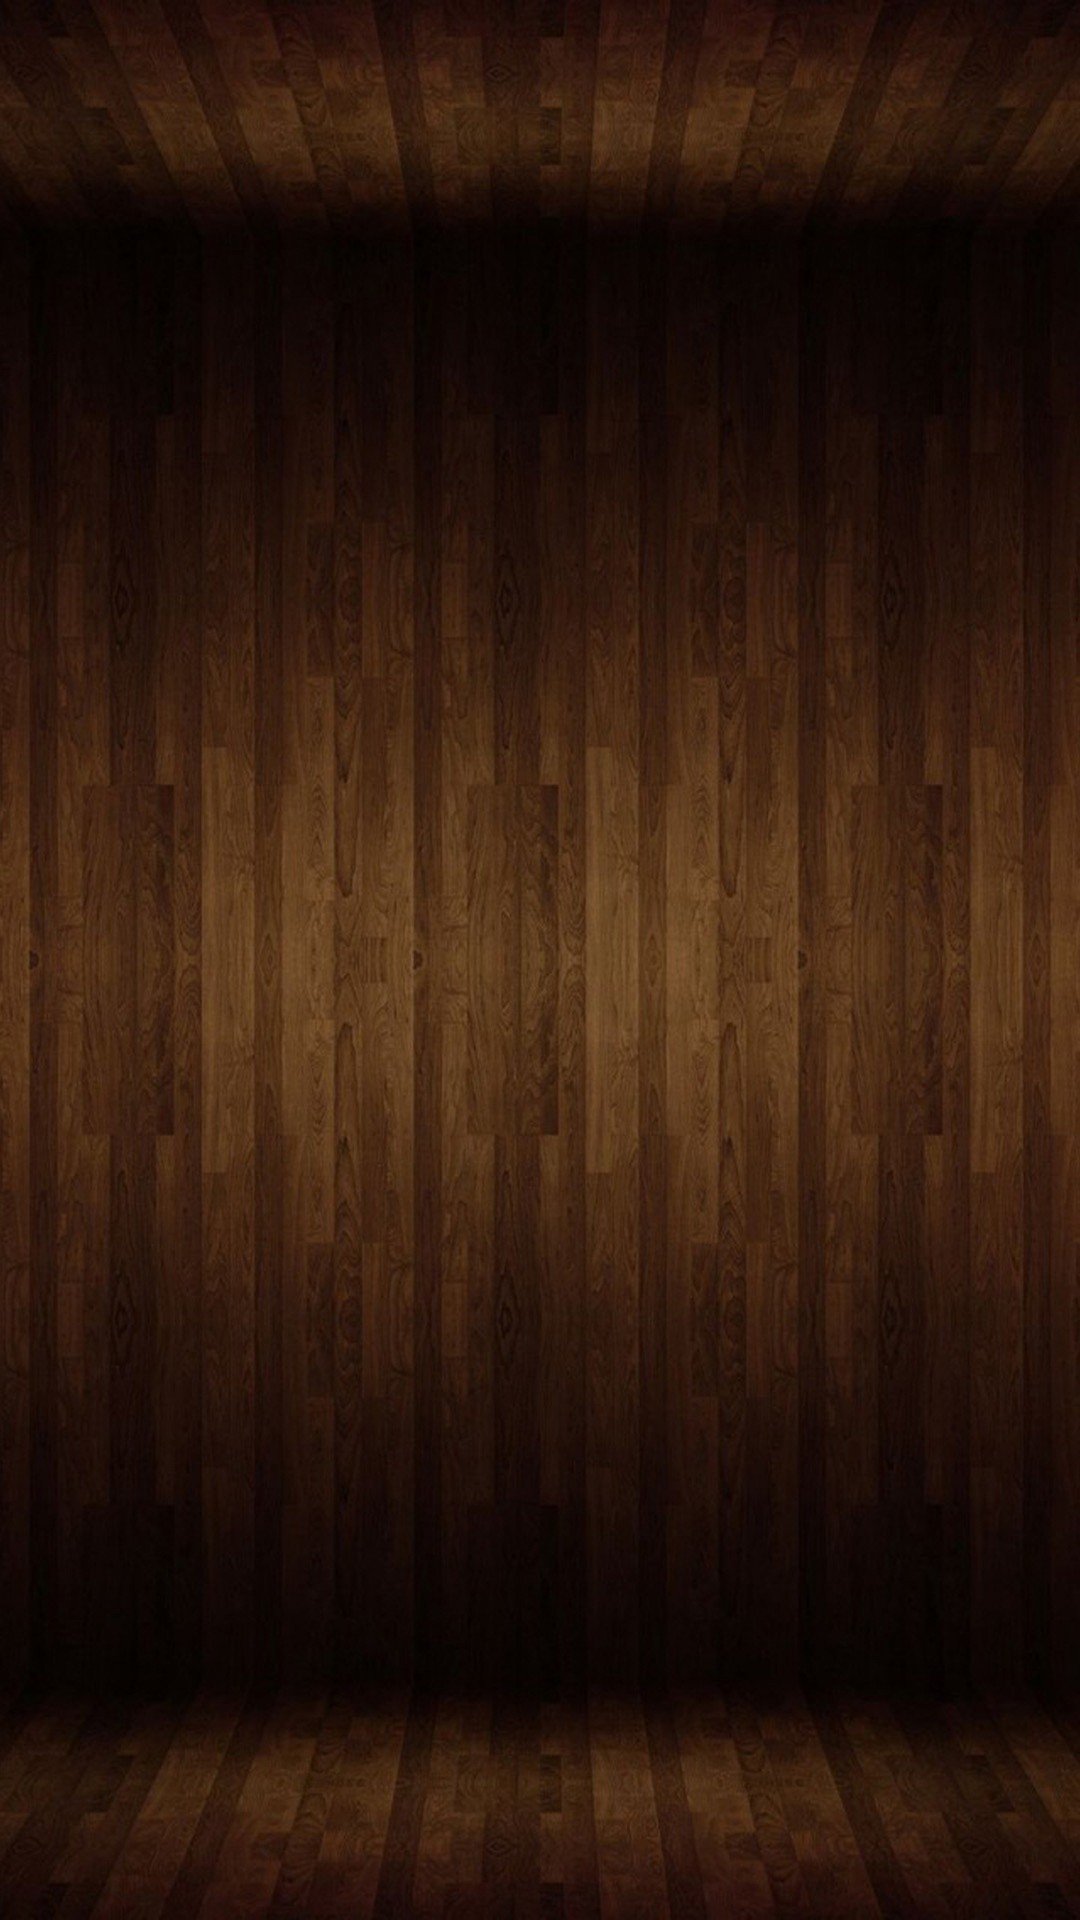 immagine di sfondo,legna,marrone,color legno,legno duro,pavimento